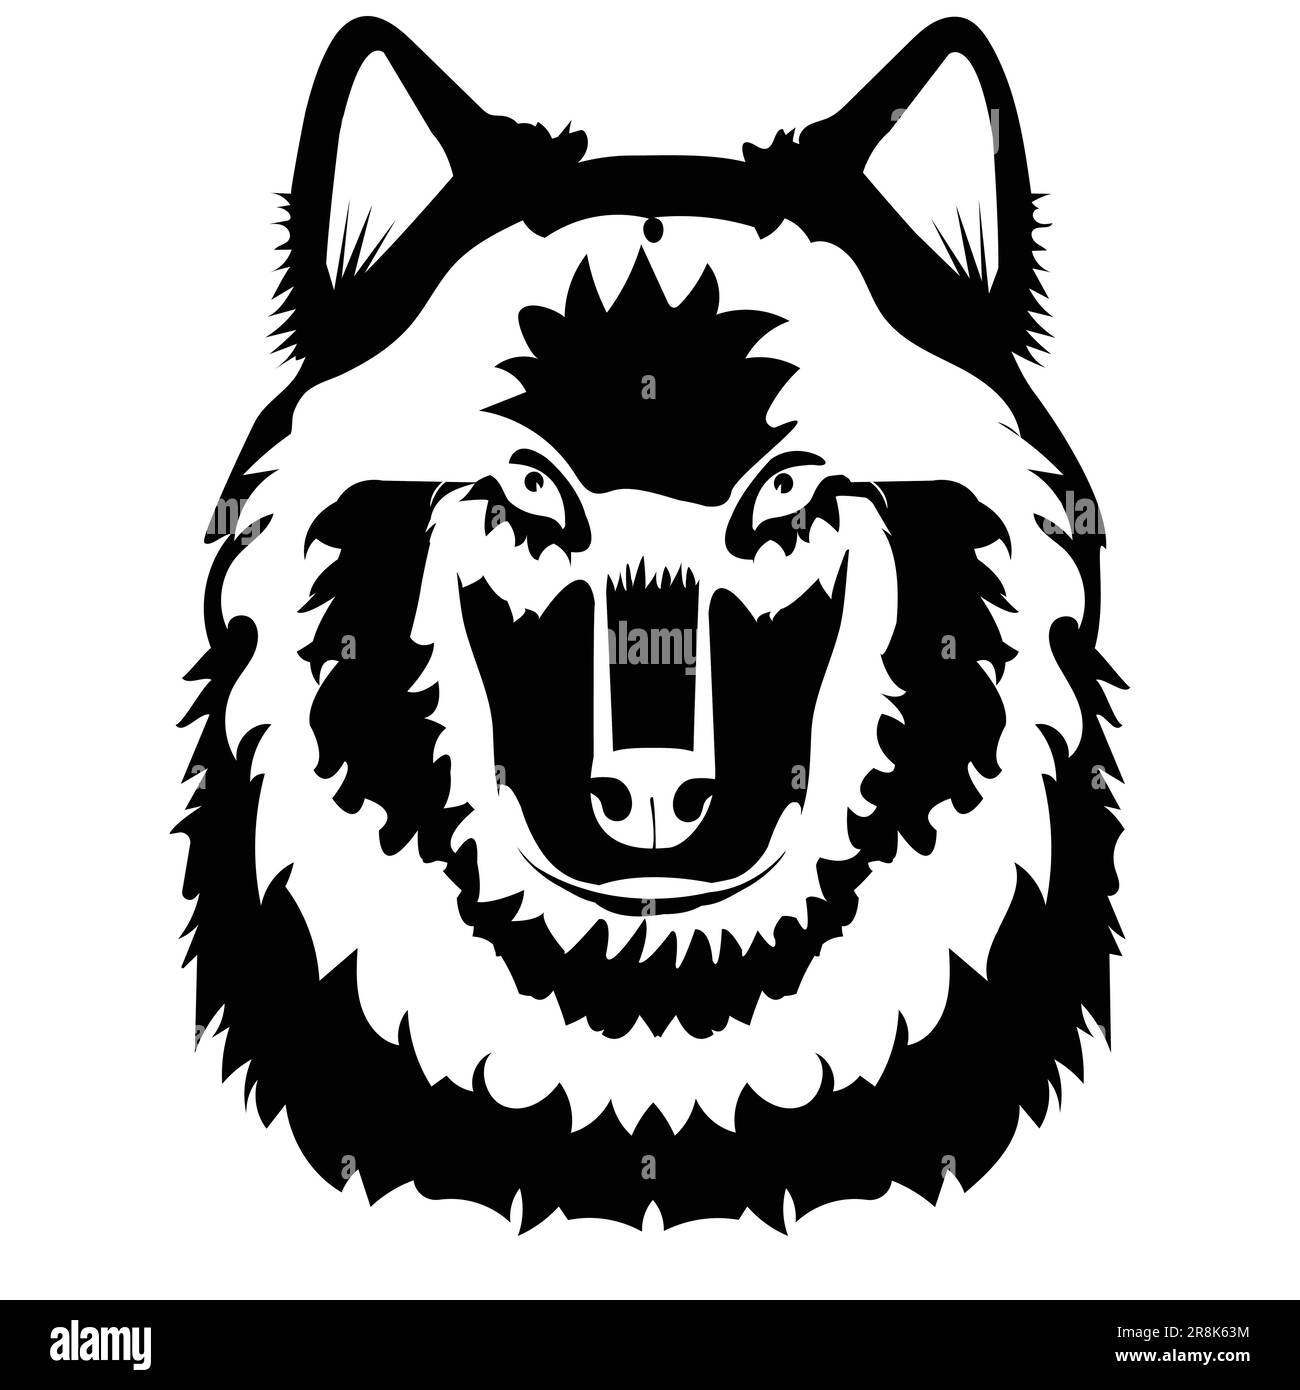 Illustrazione in bianco e nero di una testa di lupo; testa di animale monocromatica, disegno tribale Illustrazione Vettoriale